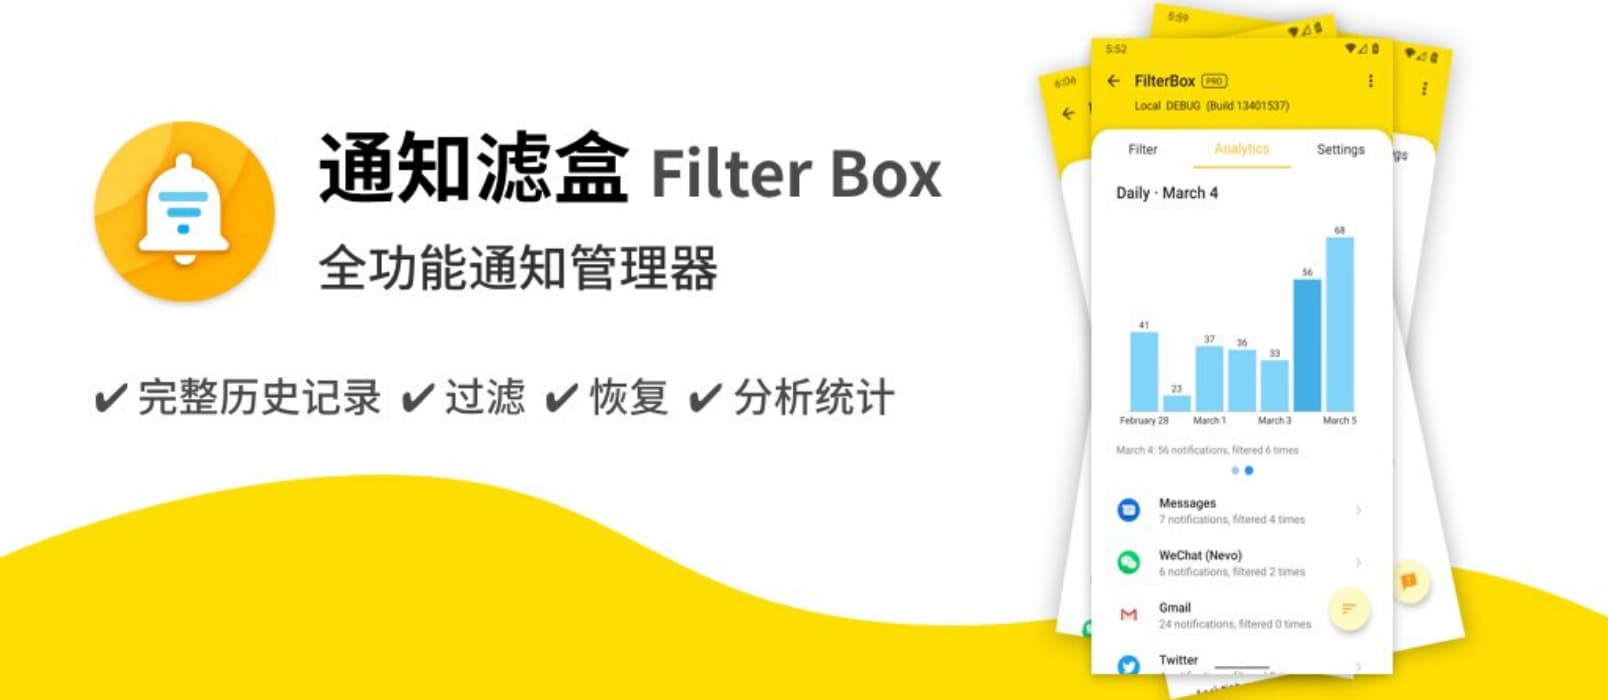 通知滤盒 Filter Box - 帮你保存、管理、统计所有的 Android 通知 1